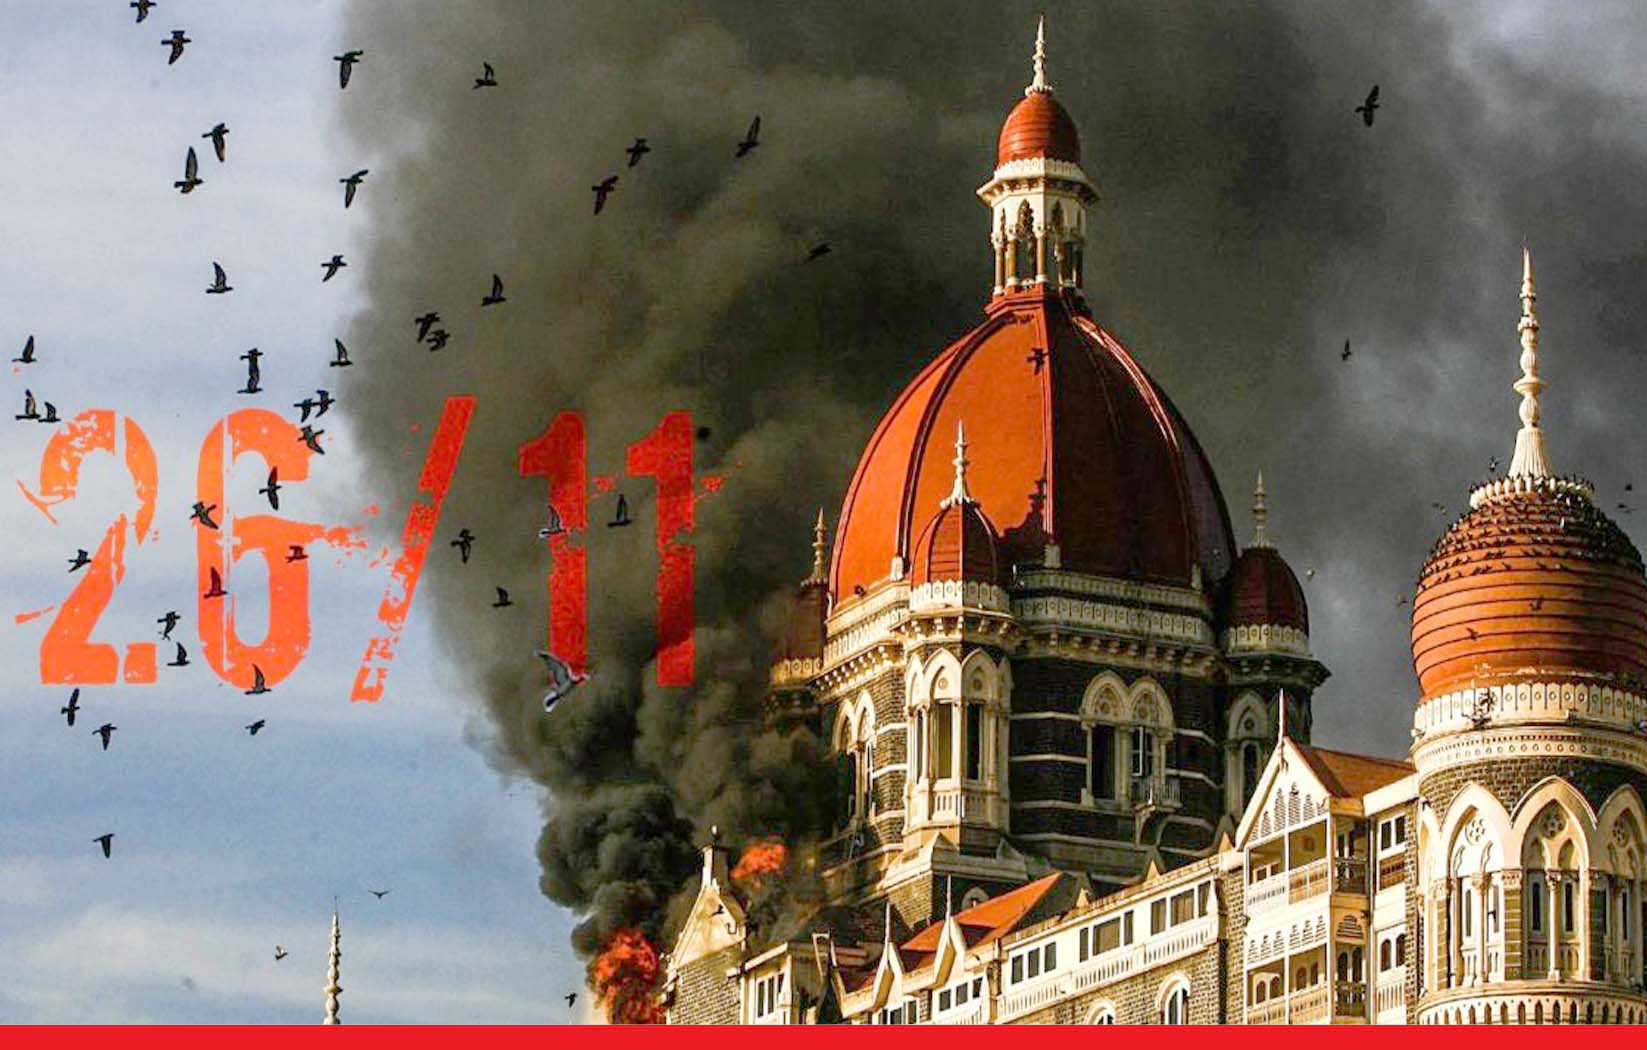 मुंबई आतंकी हमले की 13वीं बरसी : राष्ट्रपति कोविंद सहित वरिष्ठ नेताओं ने शहीदों को दी श्रद्धांजलि